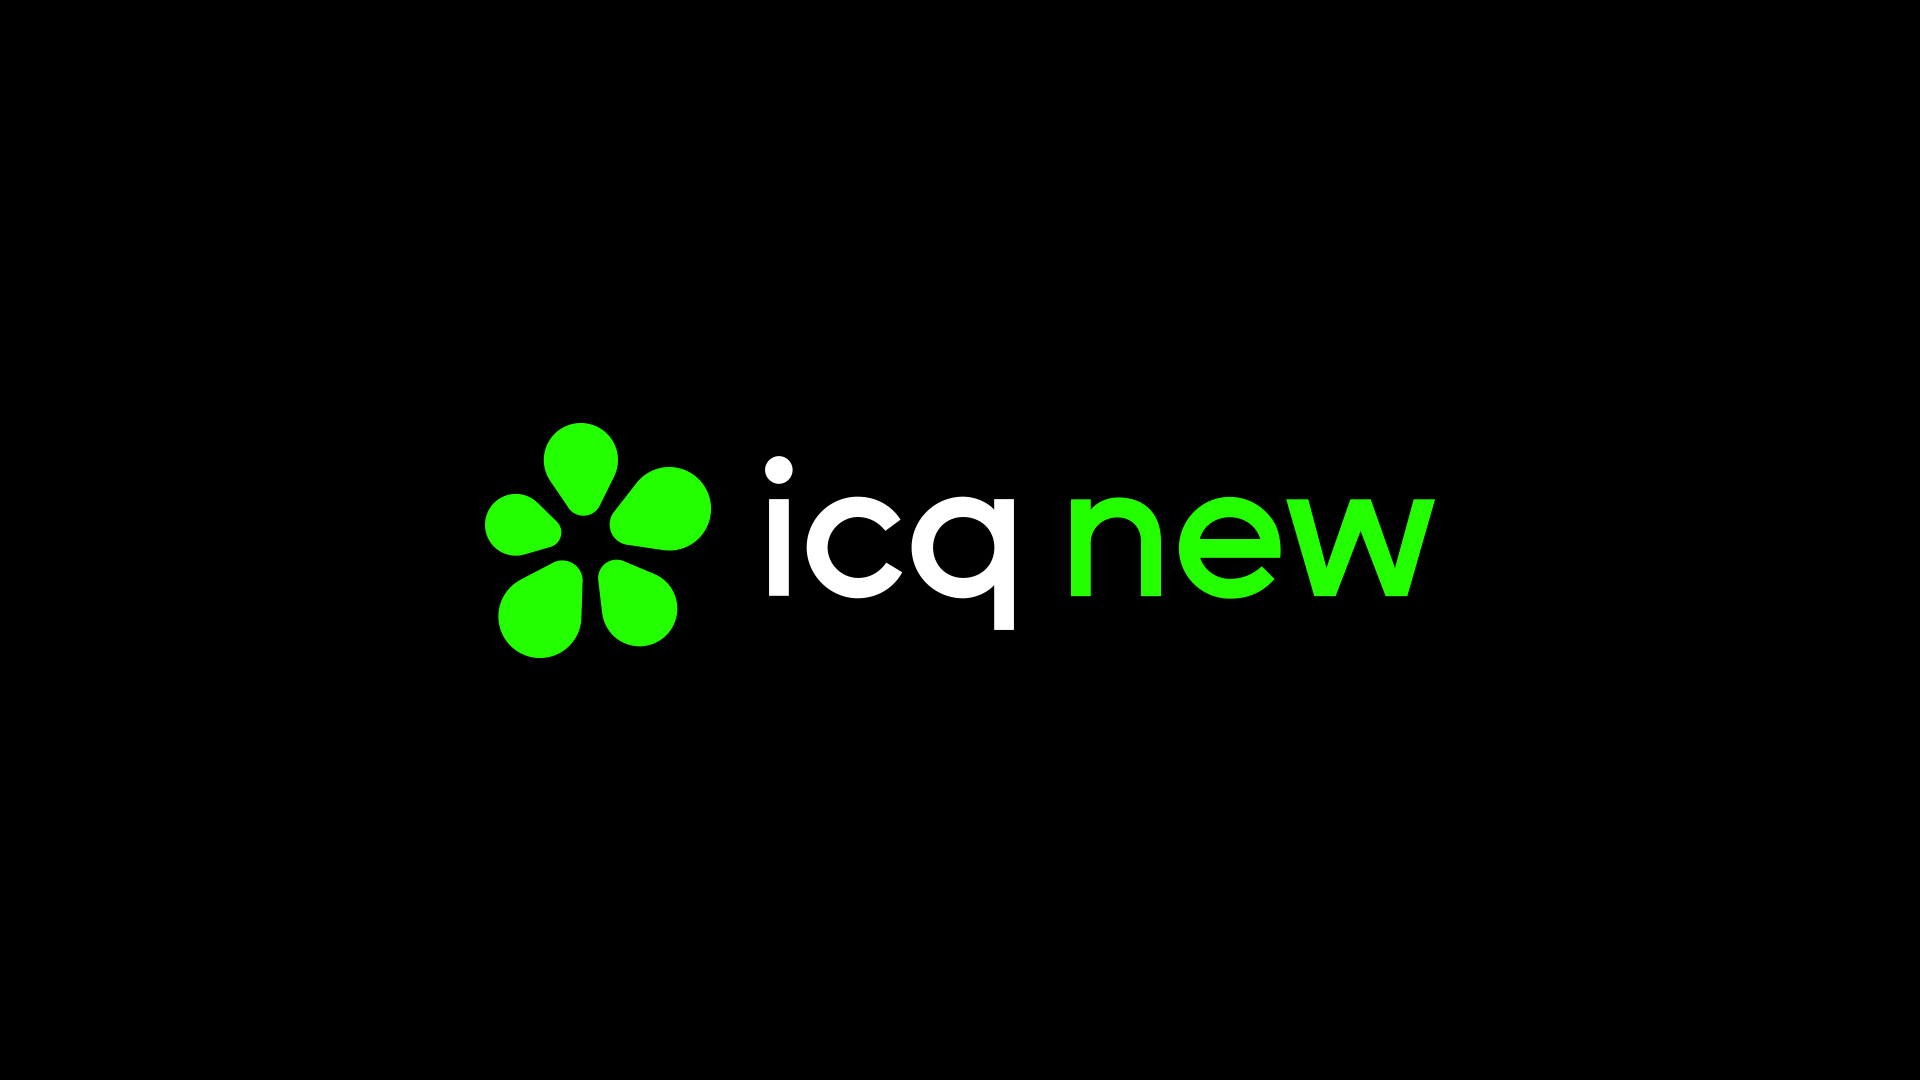 聊天软件鼻祖ICQ新logo